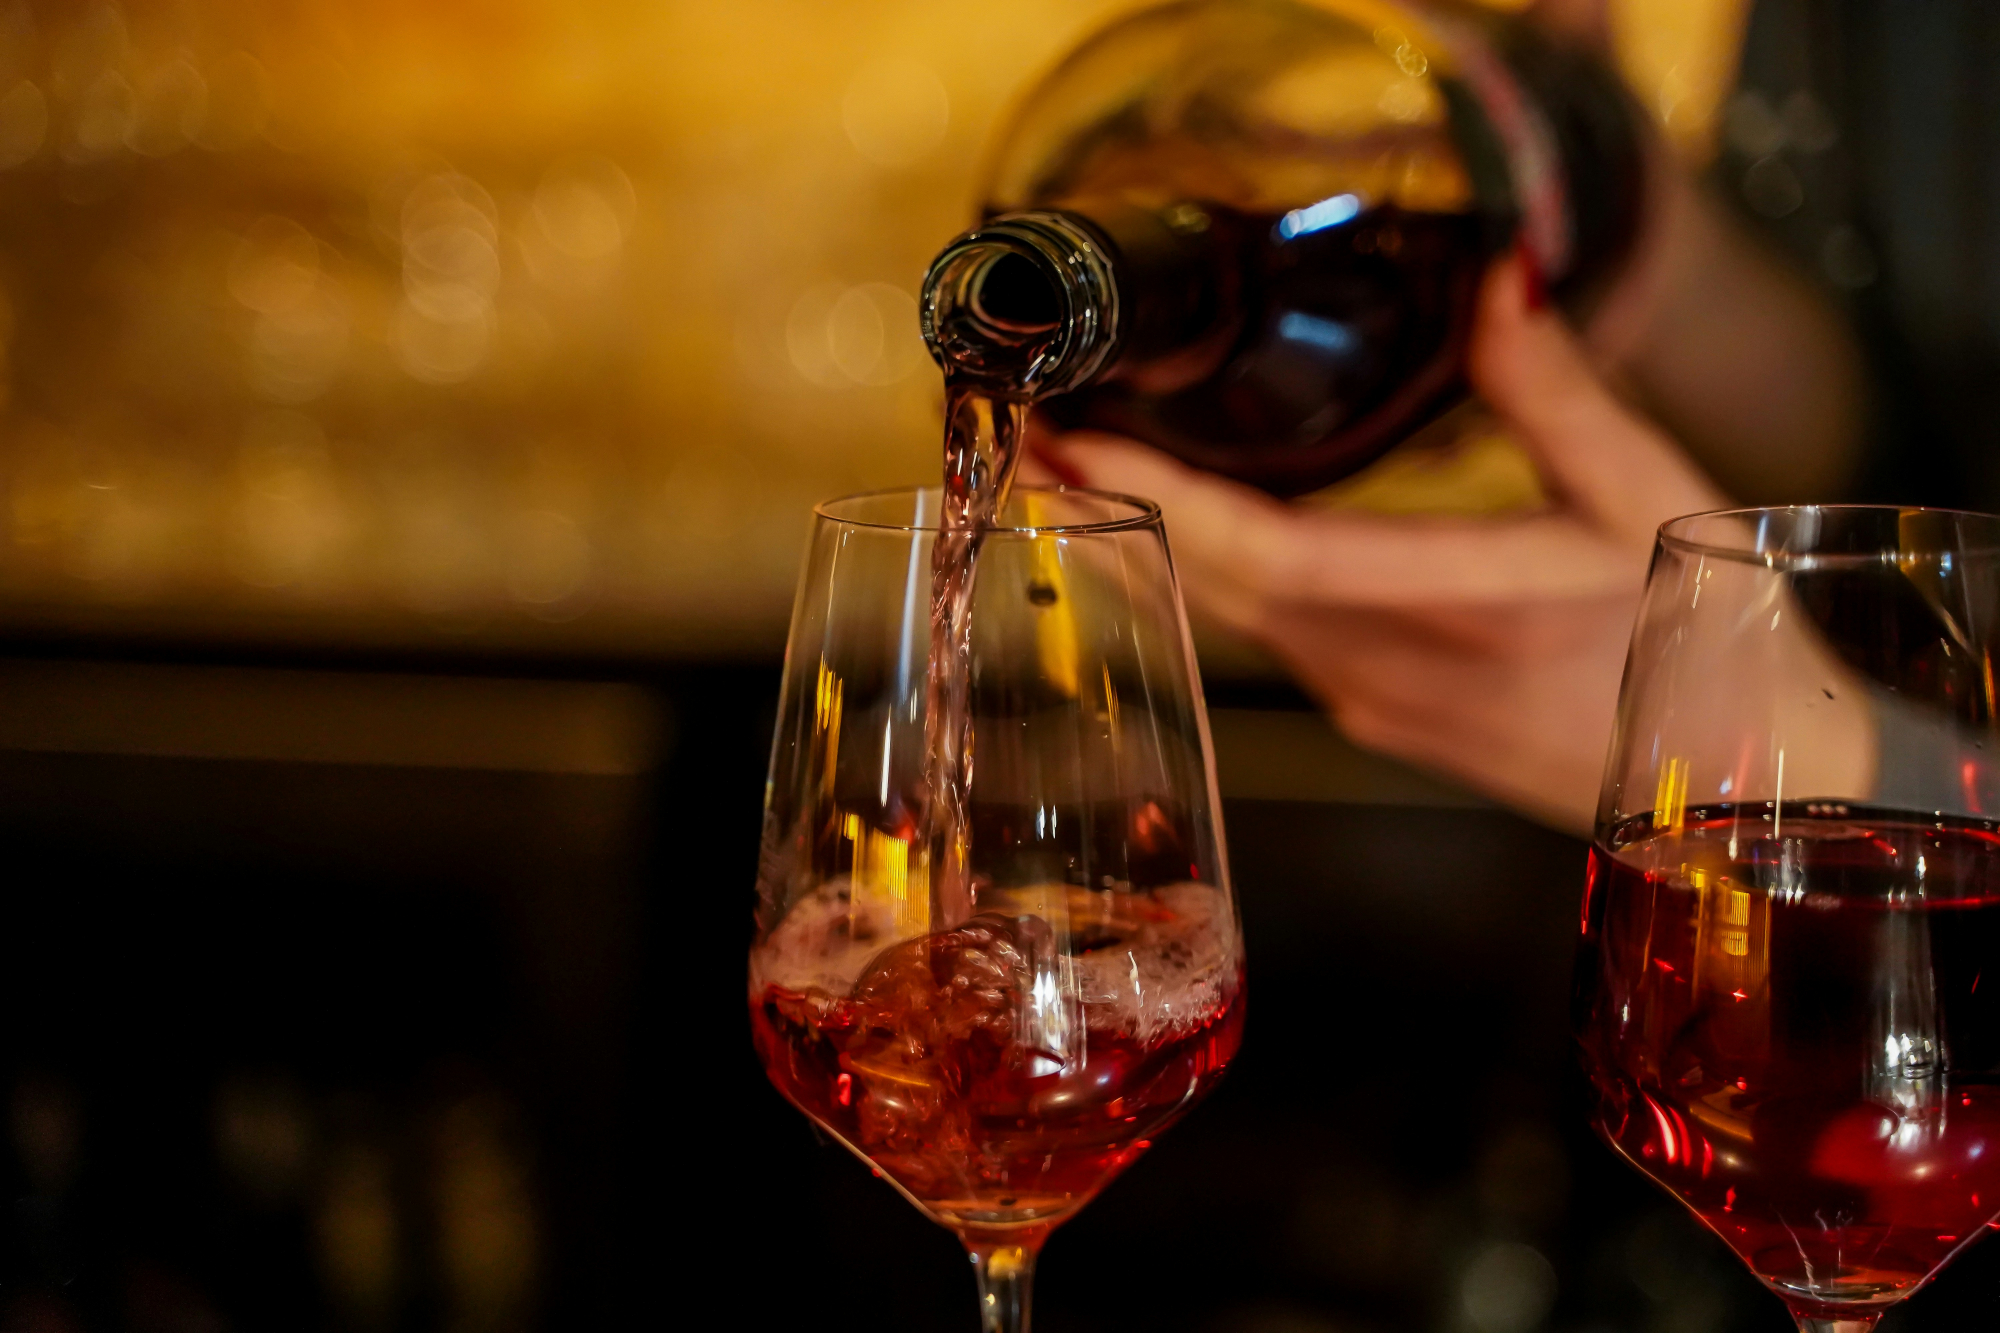 découvrez une sélection de vins rouges d'exception, provenant des terroirs les plus prestigieux. savourez la richesse et la complexité des arômes de nos vins rouges.